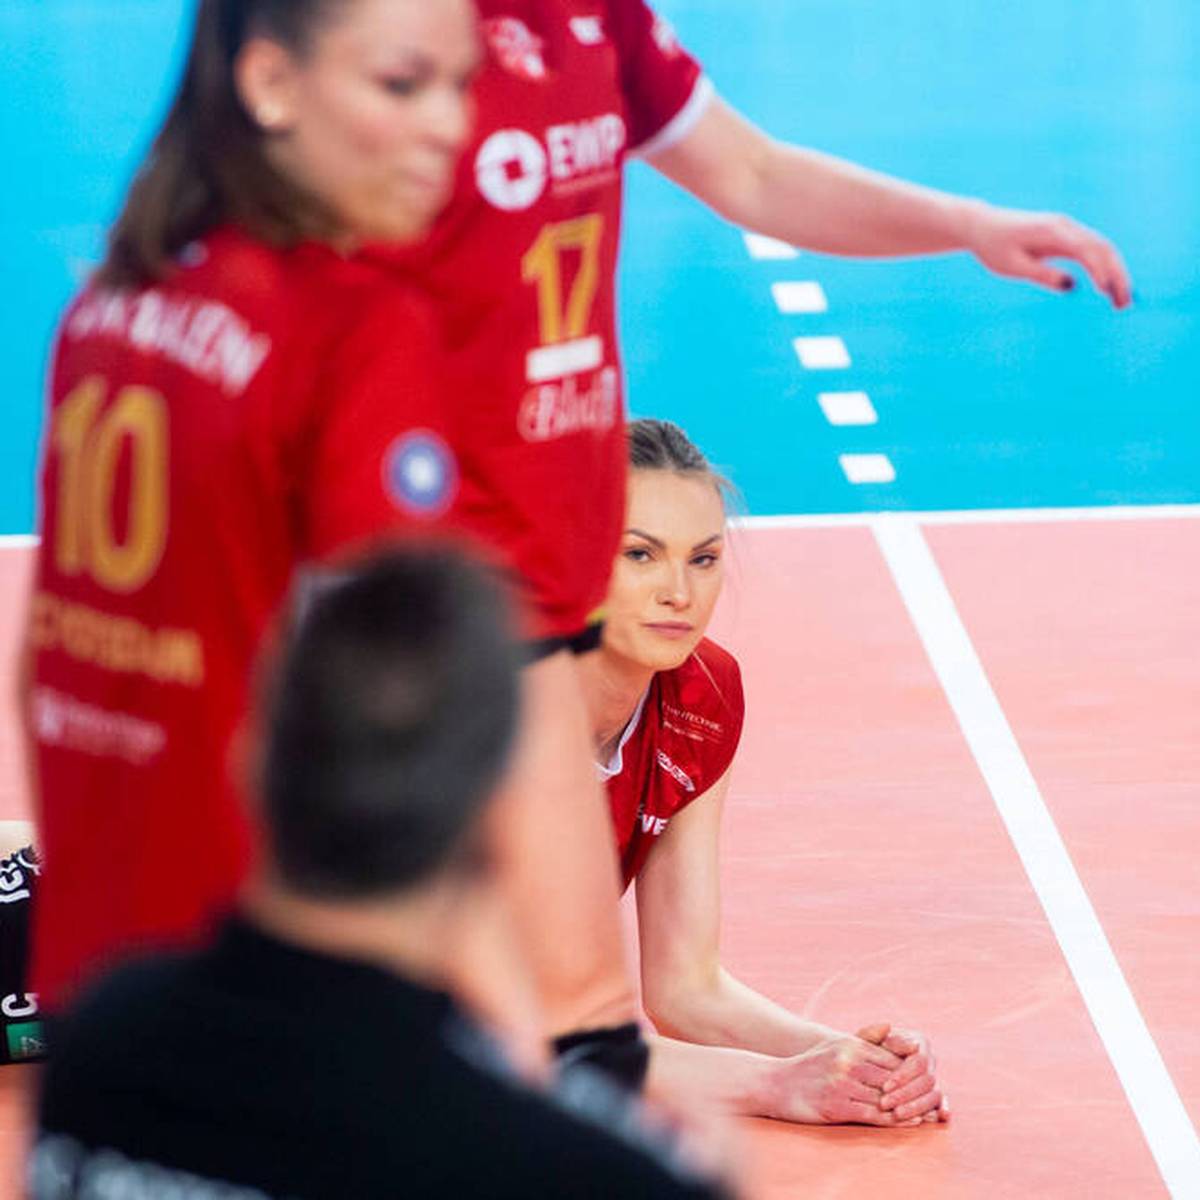 In der Volleyball-Bundesliga der Frauen verpasst der SC Potsdam seinen ersten Titel der Vereinsgeschichte. Die Norddeutschen unterliegen dem Heimfluch der Finalserie und müssen nun auf Spiel fünf hoffen.